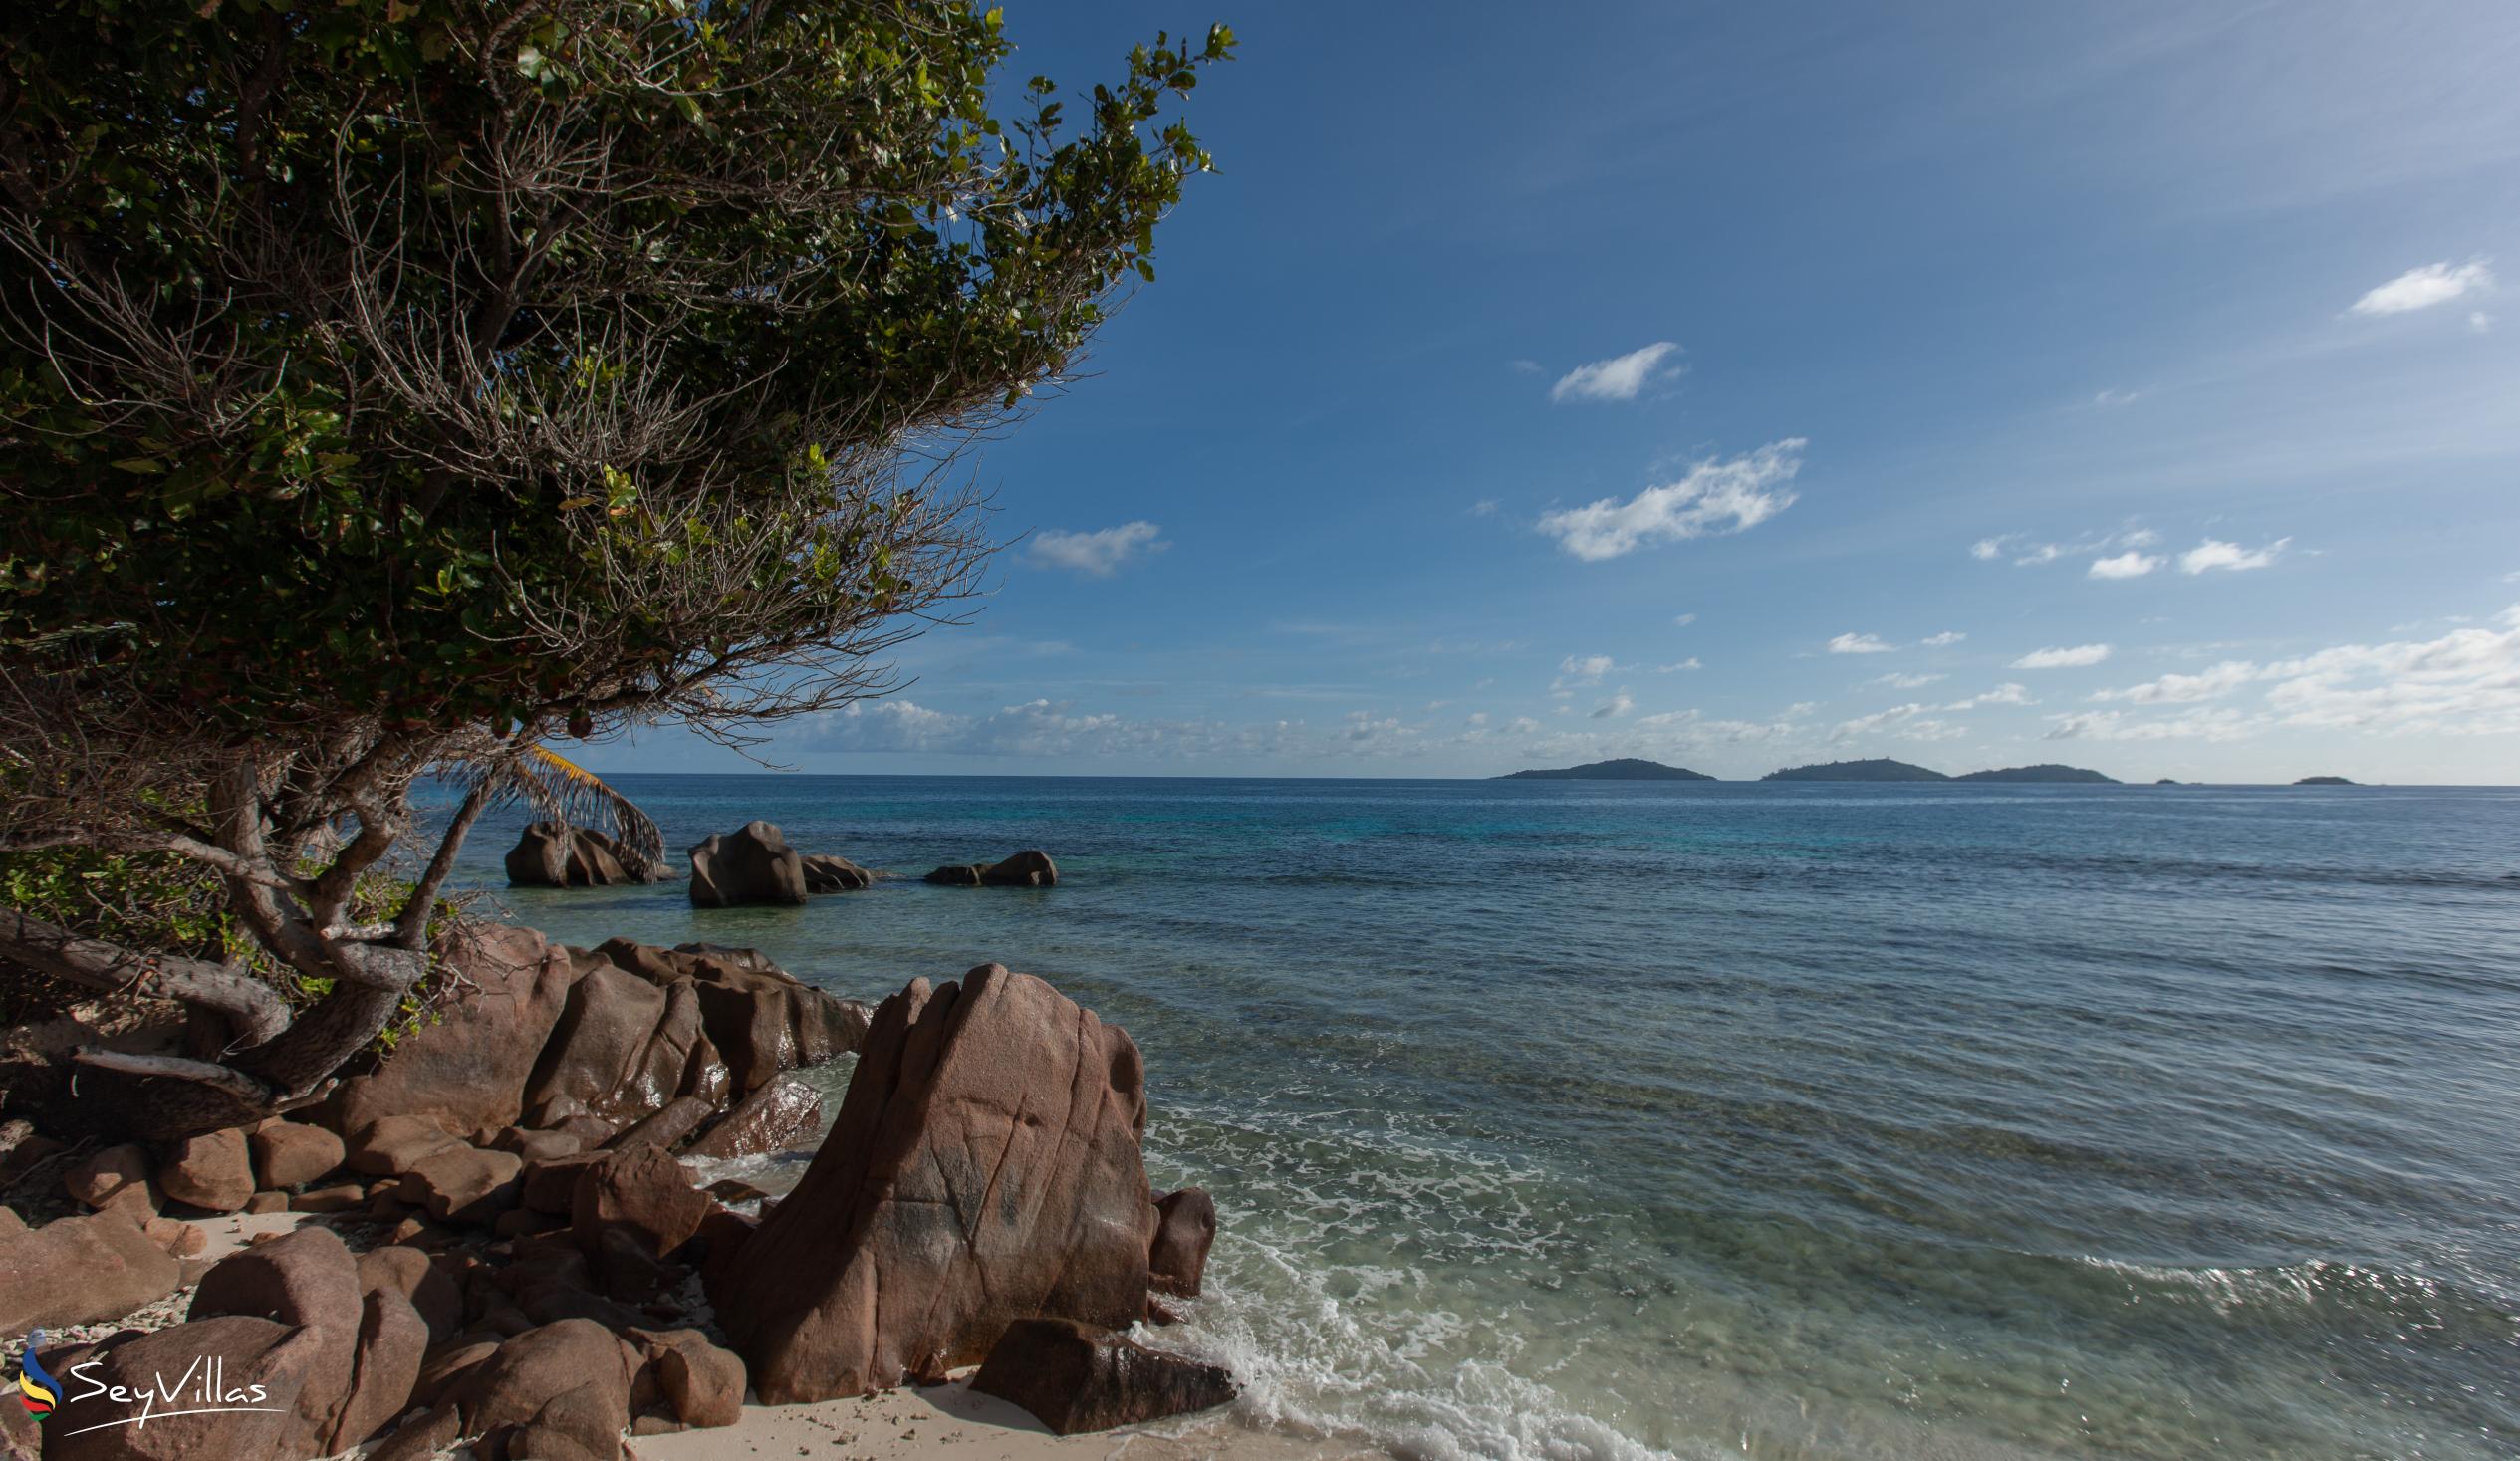 Foto 57: Villa Verte - Plages - La Digue (Seychelles)